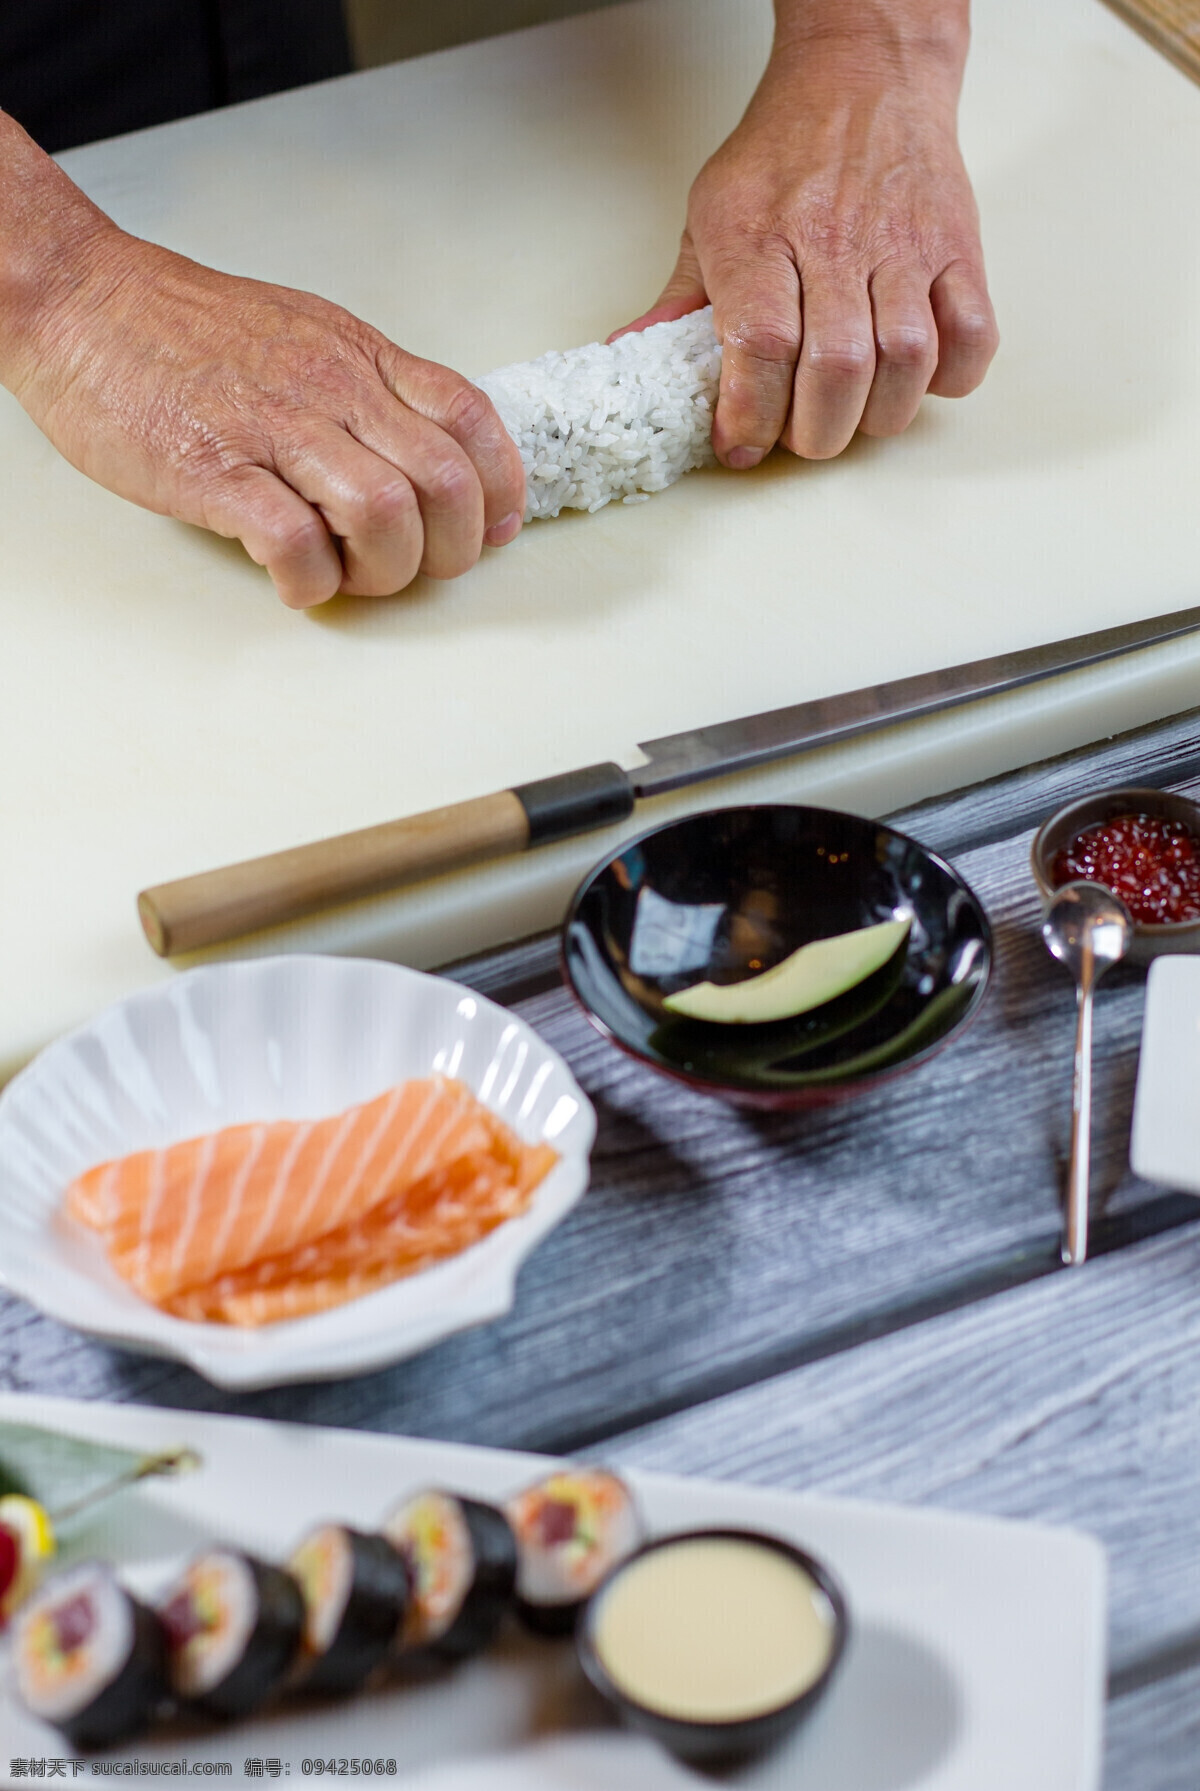 寿司制作过程 职业 日本 寿司 制作 过程 白色